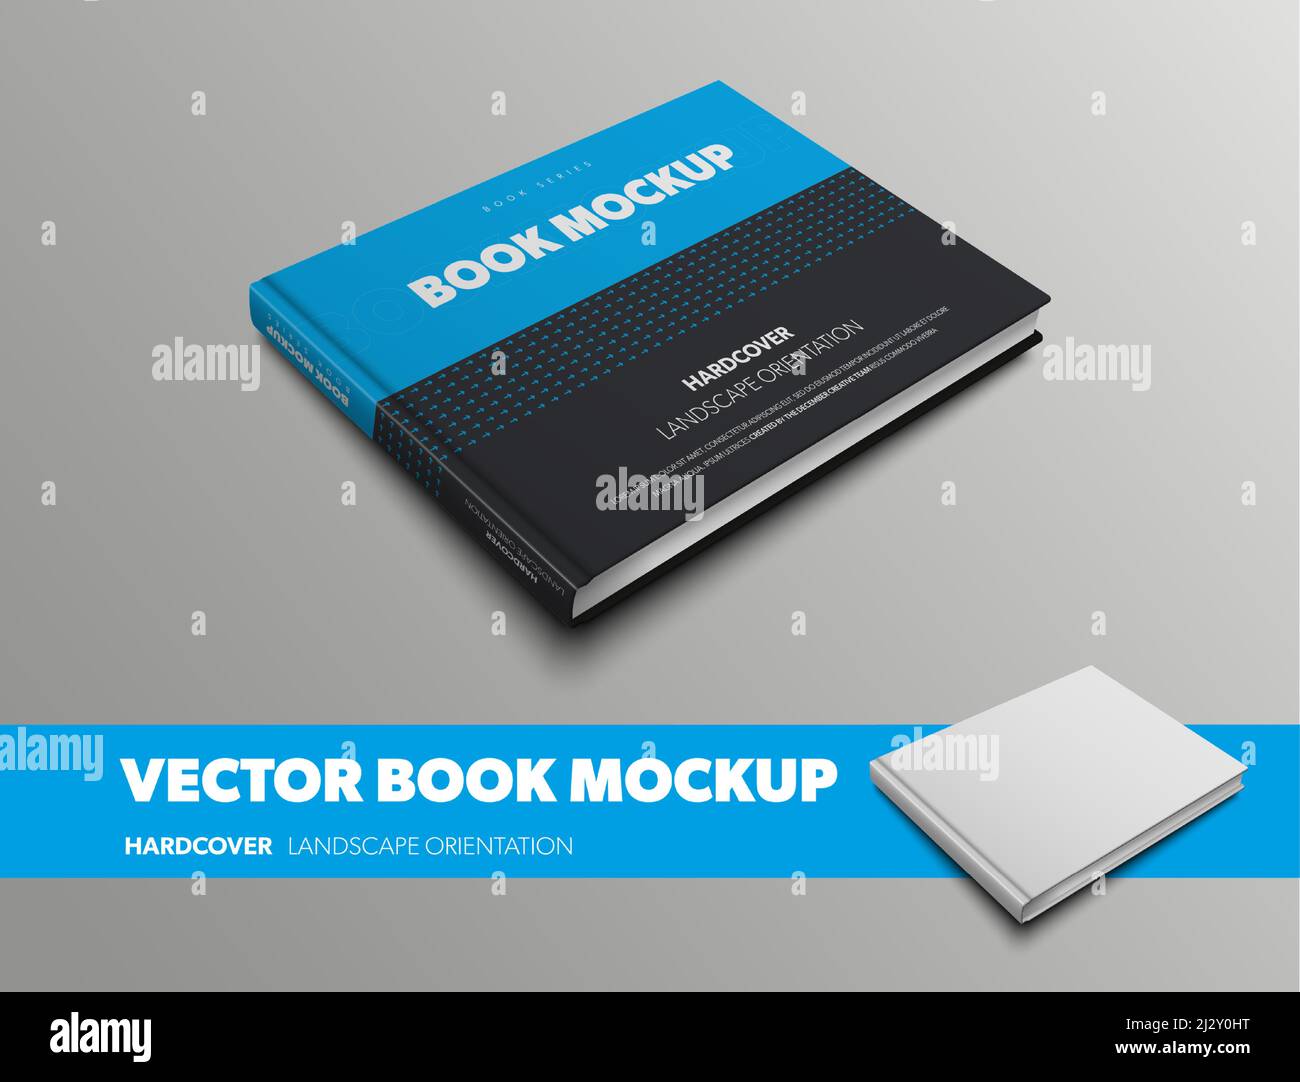 Modell eines geschlossenen Buches in blau und schwarz mit einem abstrakten Muster, isoliert auf einem grauen Hintergrund. Hardcover Vektor Landschaft Vorlage für Design Prese Stock Vektor